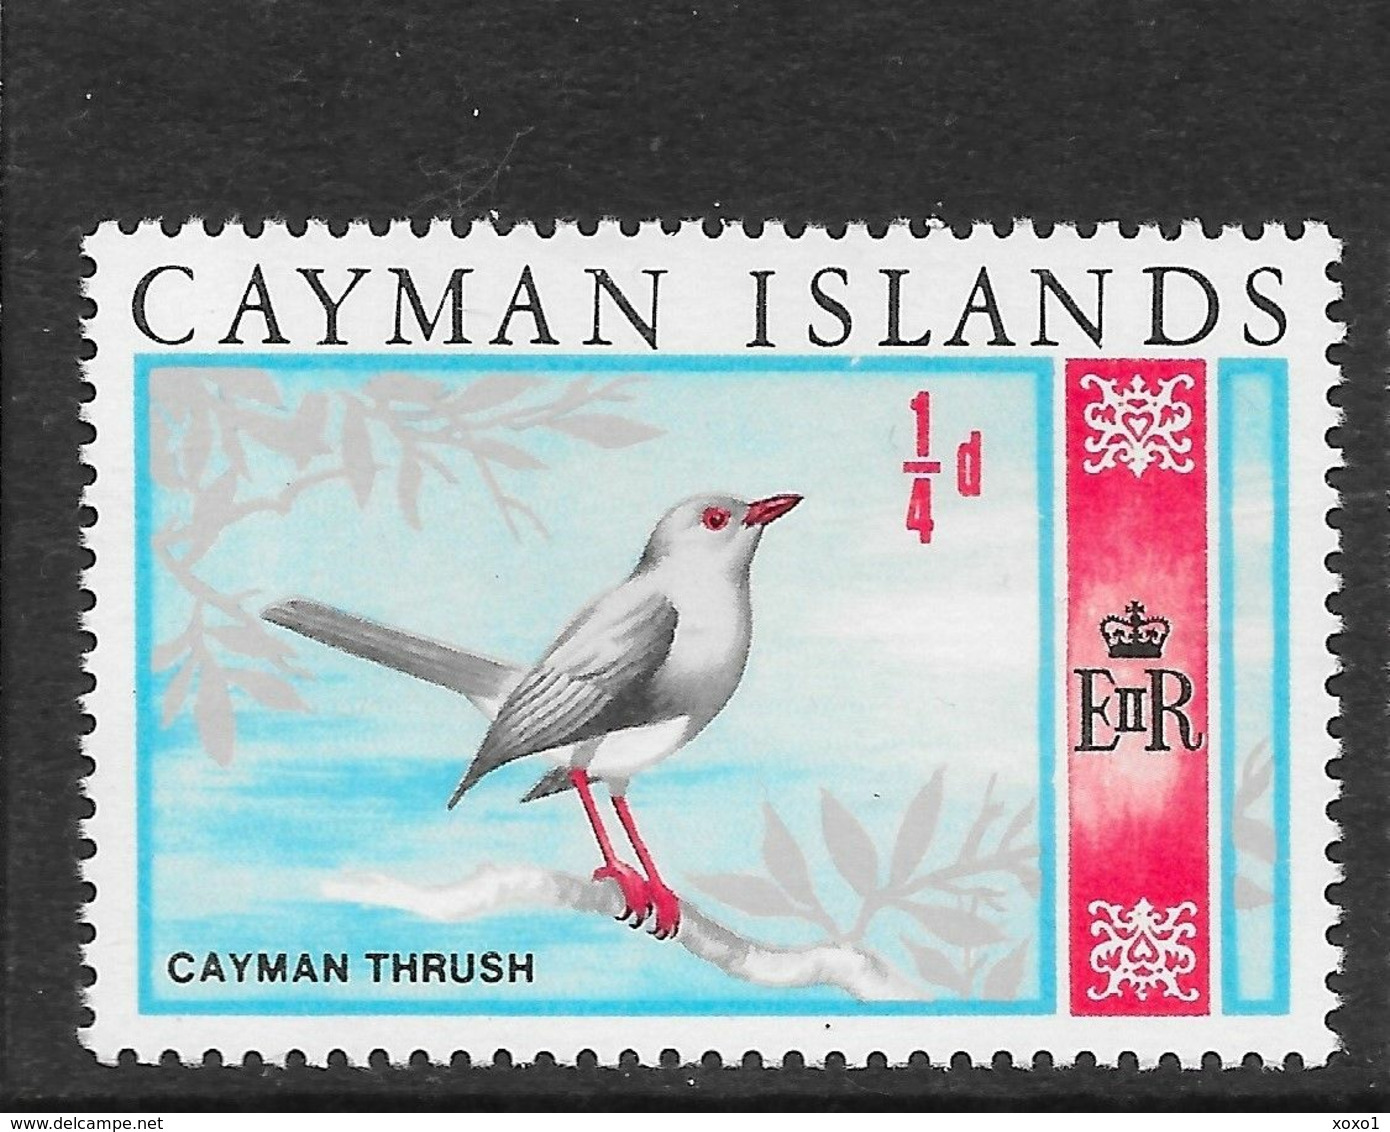 Cayman Islands 1969 MiNr. 211 Kaiman Birds (an Extinct) Grand Cayman Thrush 1v MNH** 0,30 € - Cayman Islands